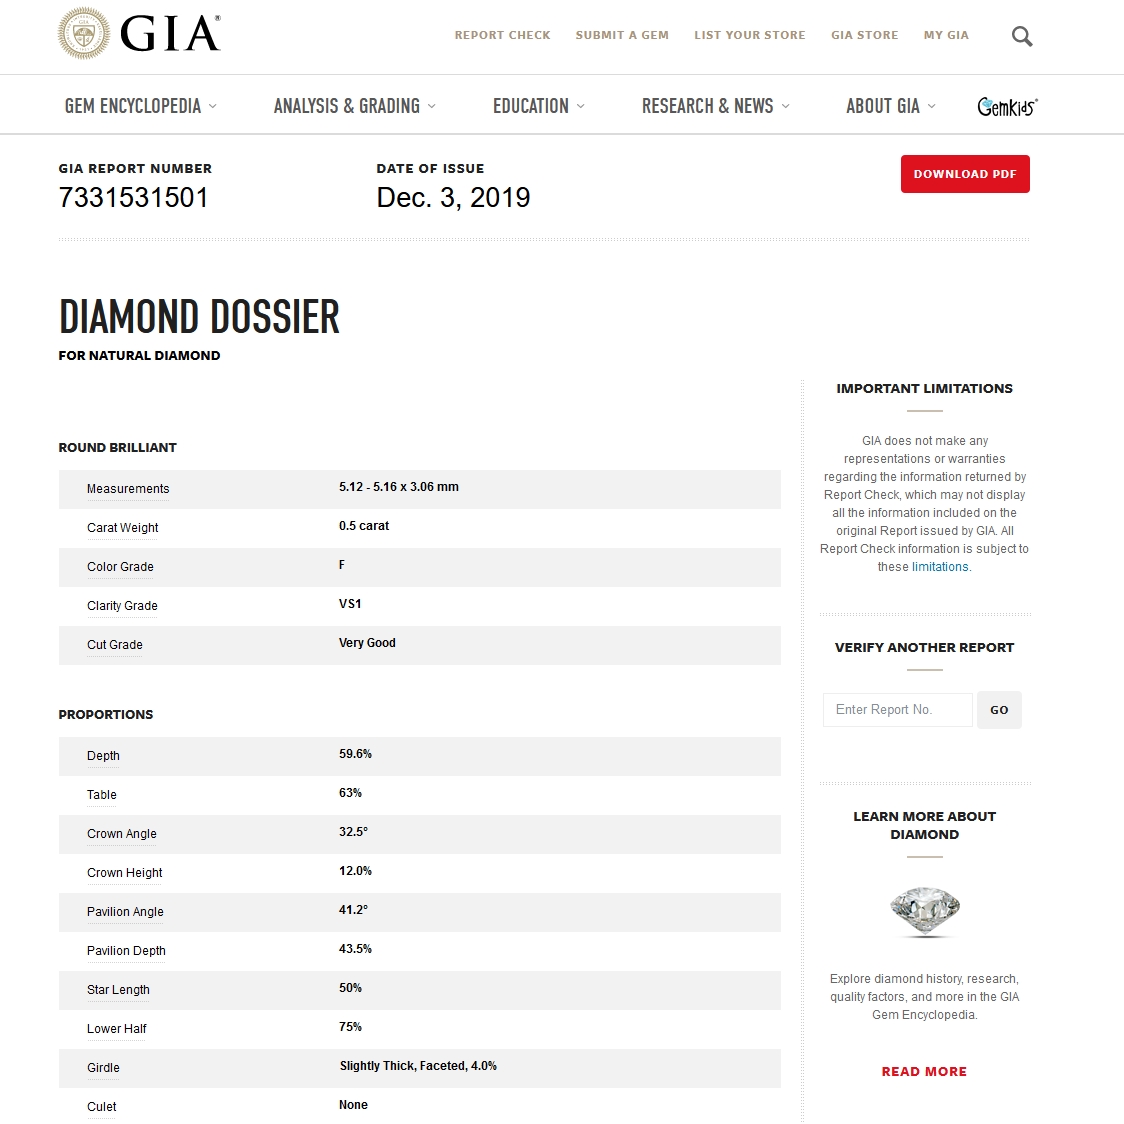 Diamante Naturale Certificato GIA Kt. 0,50 Colore F Purezza VS1